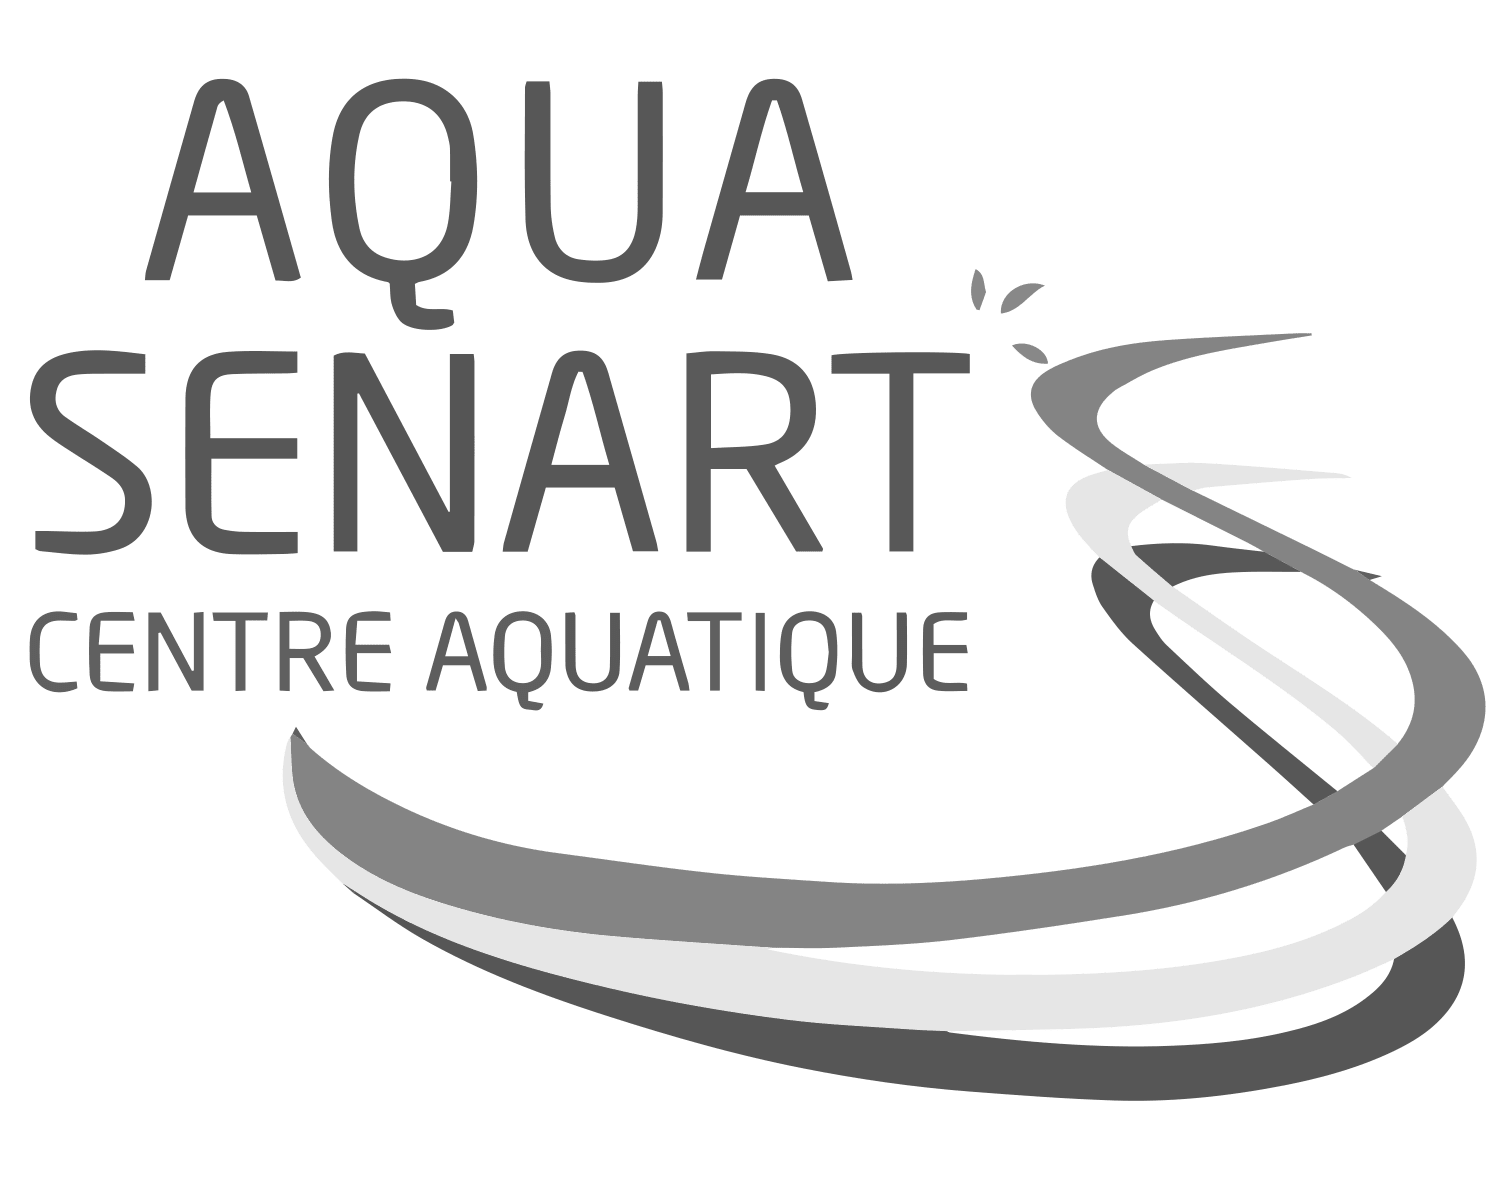 Centre aquatique Aqua Sénart